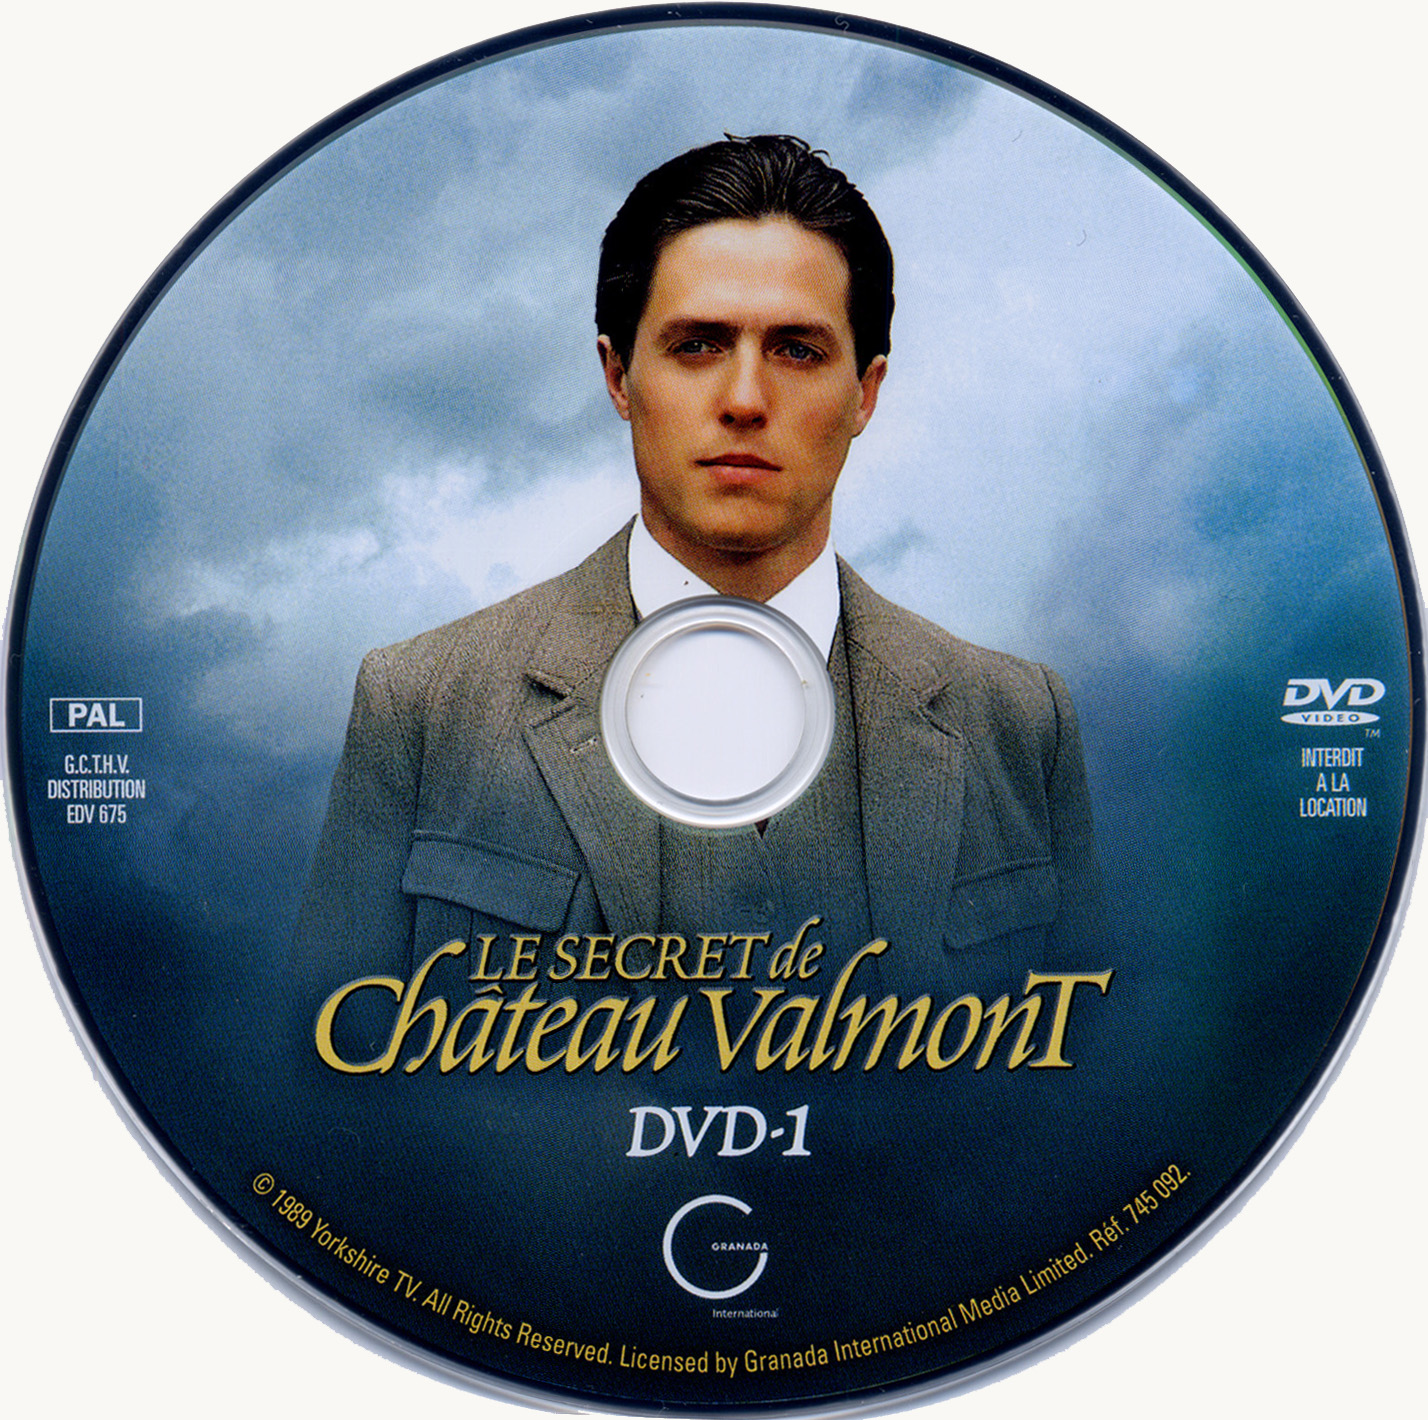 Le secret de chateau Valmont dvd 1